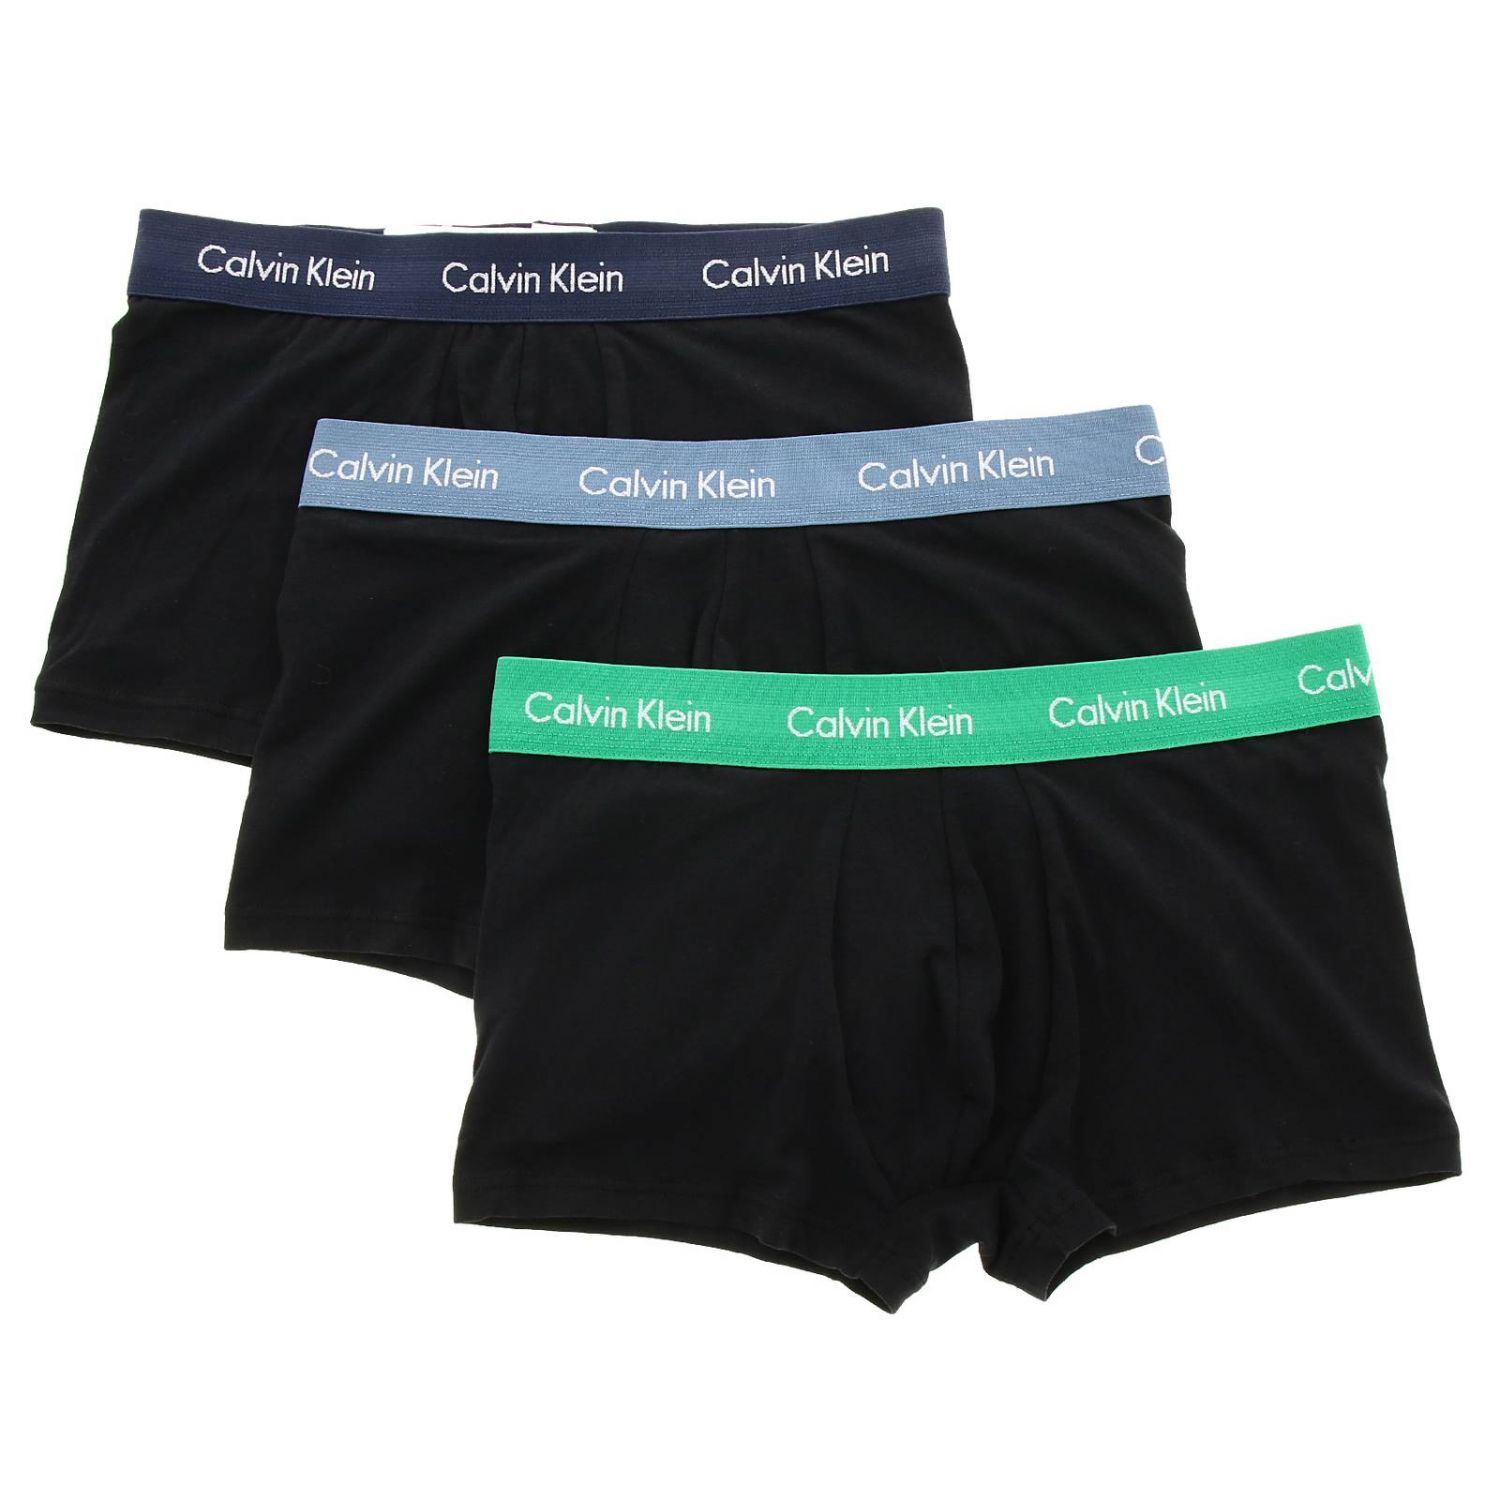 Calvin Klein Underwear Outlet: underwear for men - Black | Calvin Klein ...